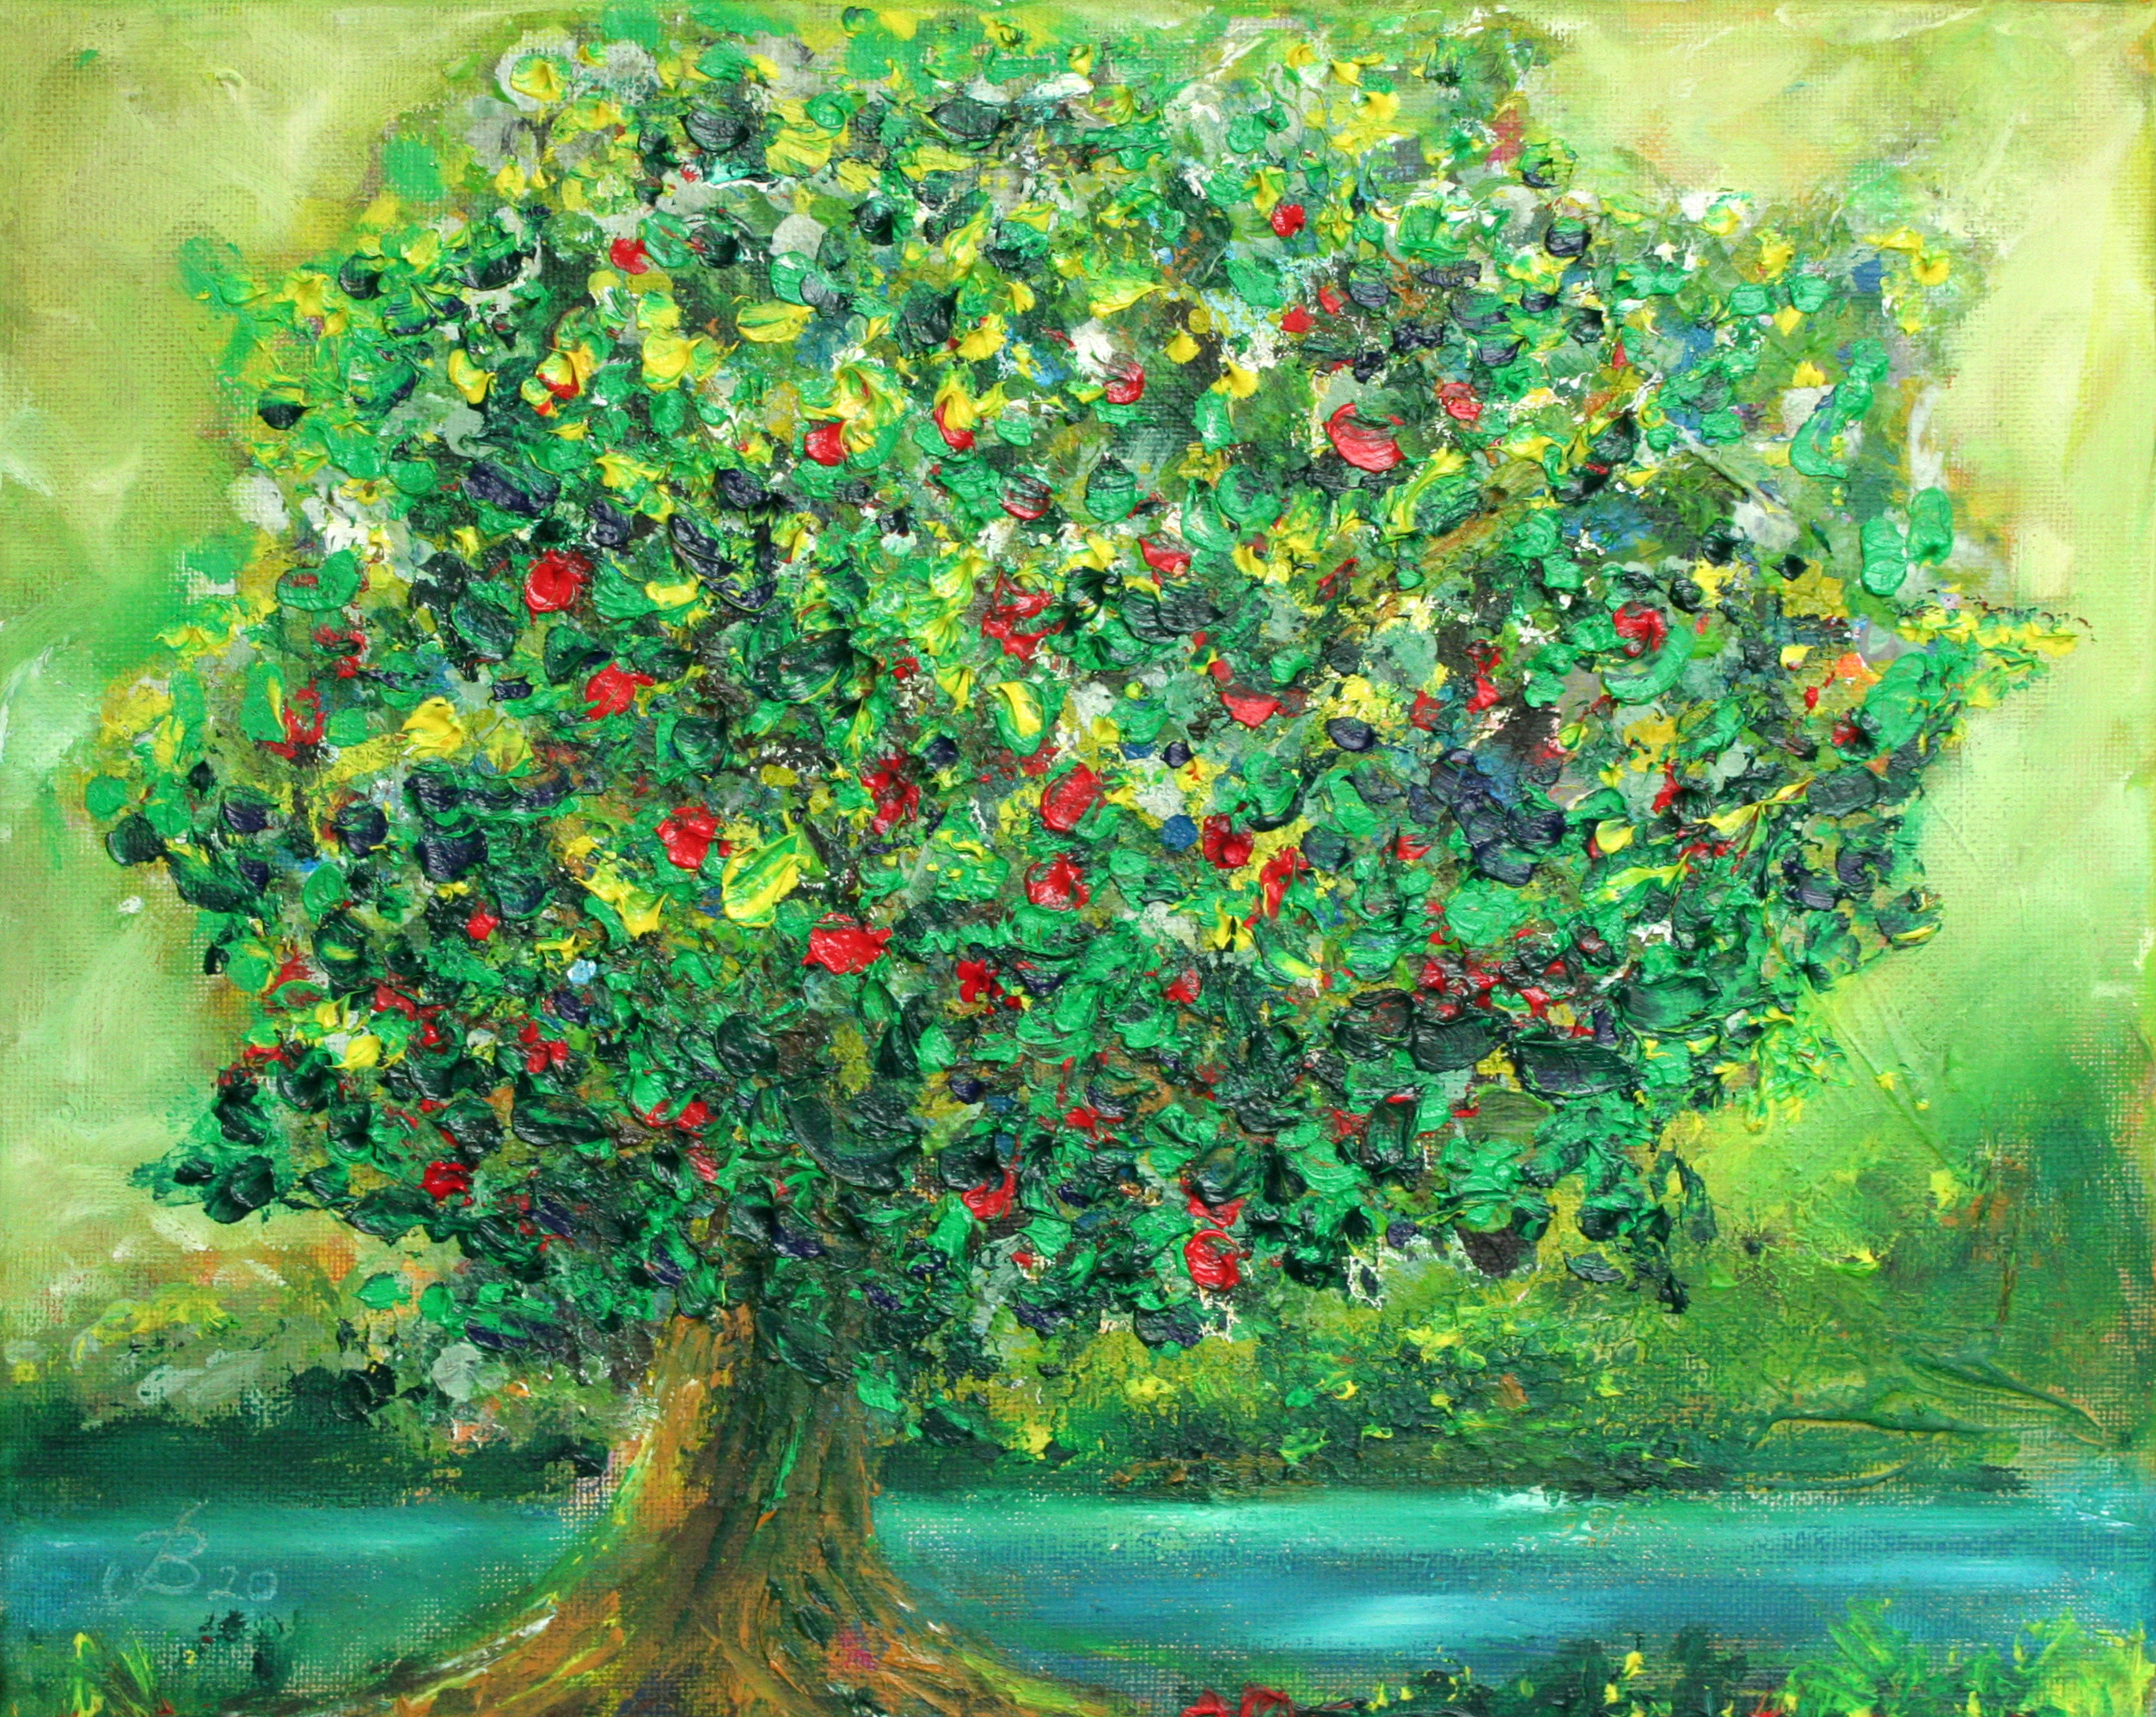 Tree of life, Acryl undÖl, 30x24cm